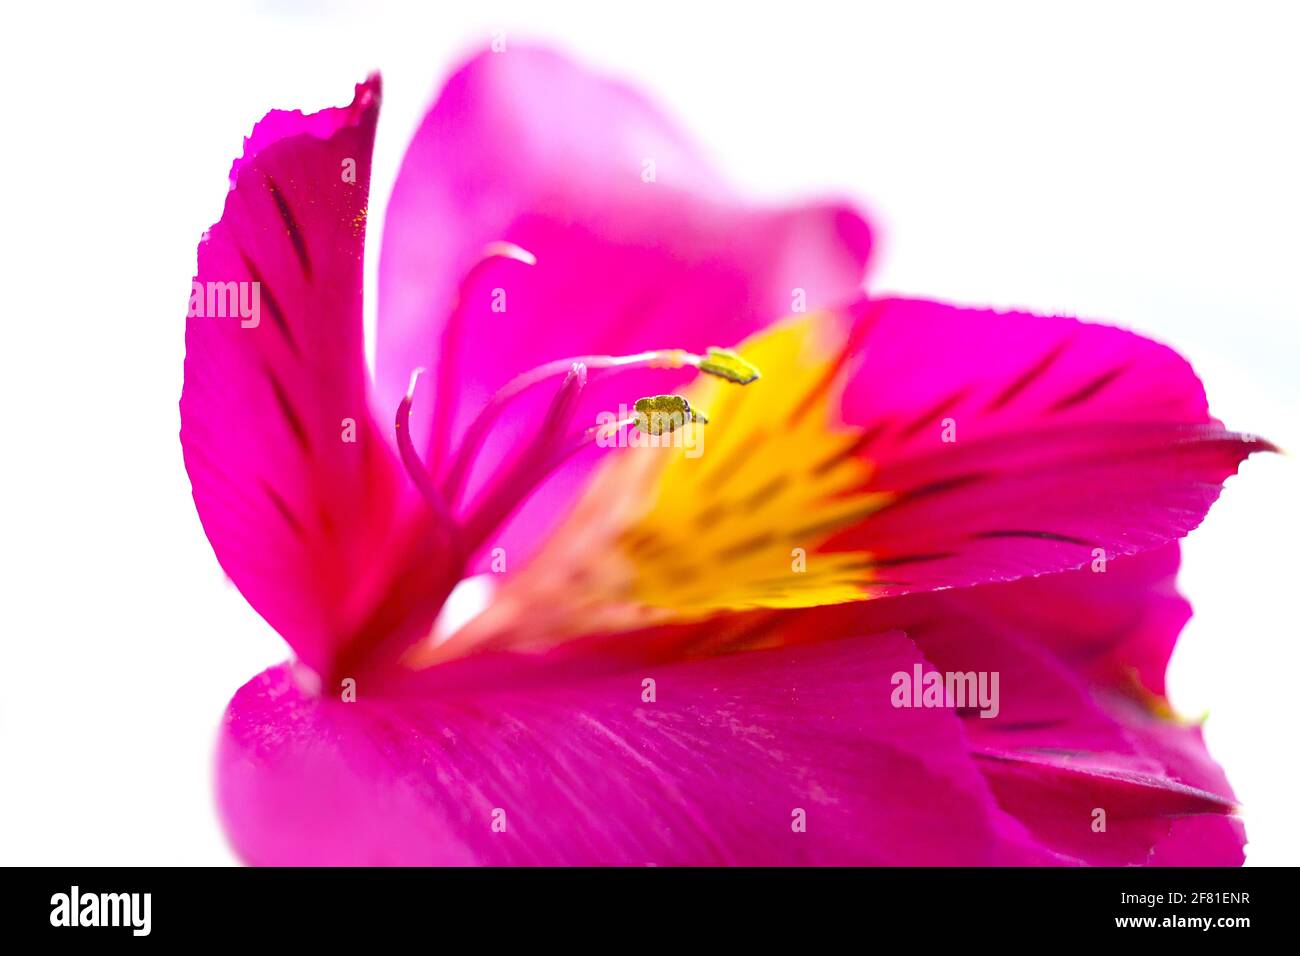 Tenera gemma rosa e gialla, petali, pistilli e stami di Alstroemeria peruvan incas lilly fiore su sfondo bianco Foto Stock